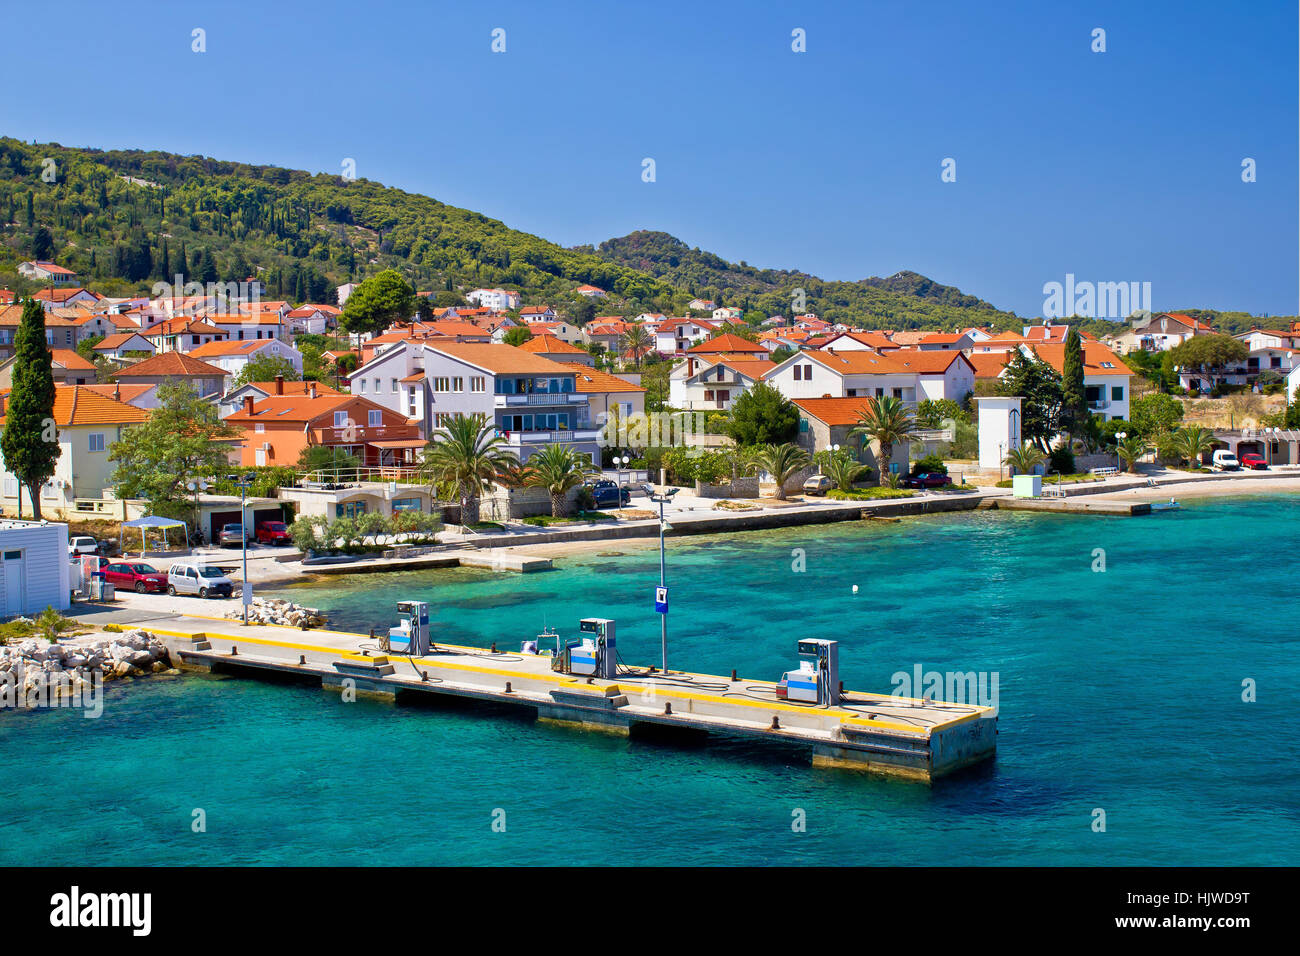 Mare stazione di gas per barche, isola di Ugljan, Croazia Foto Stock